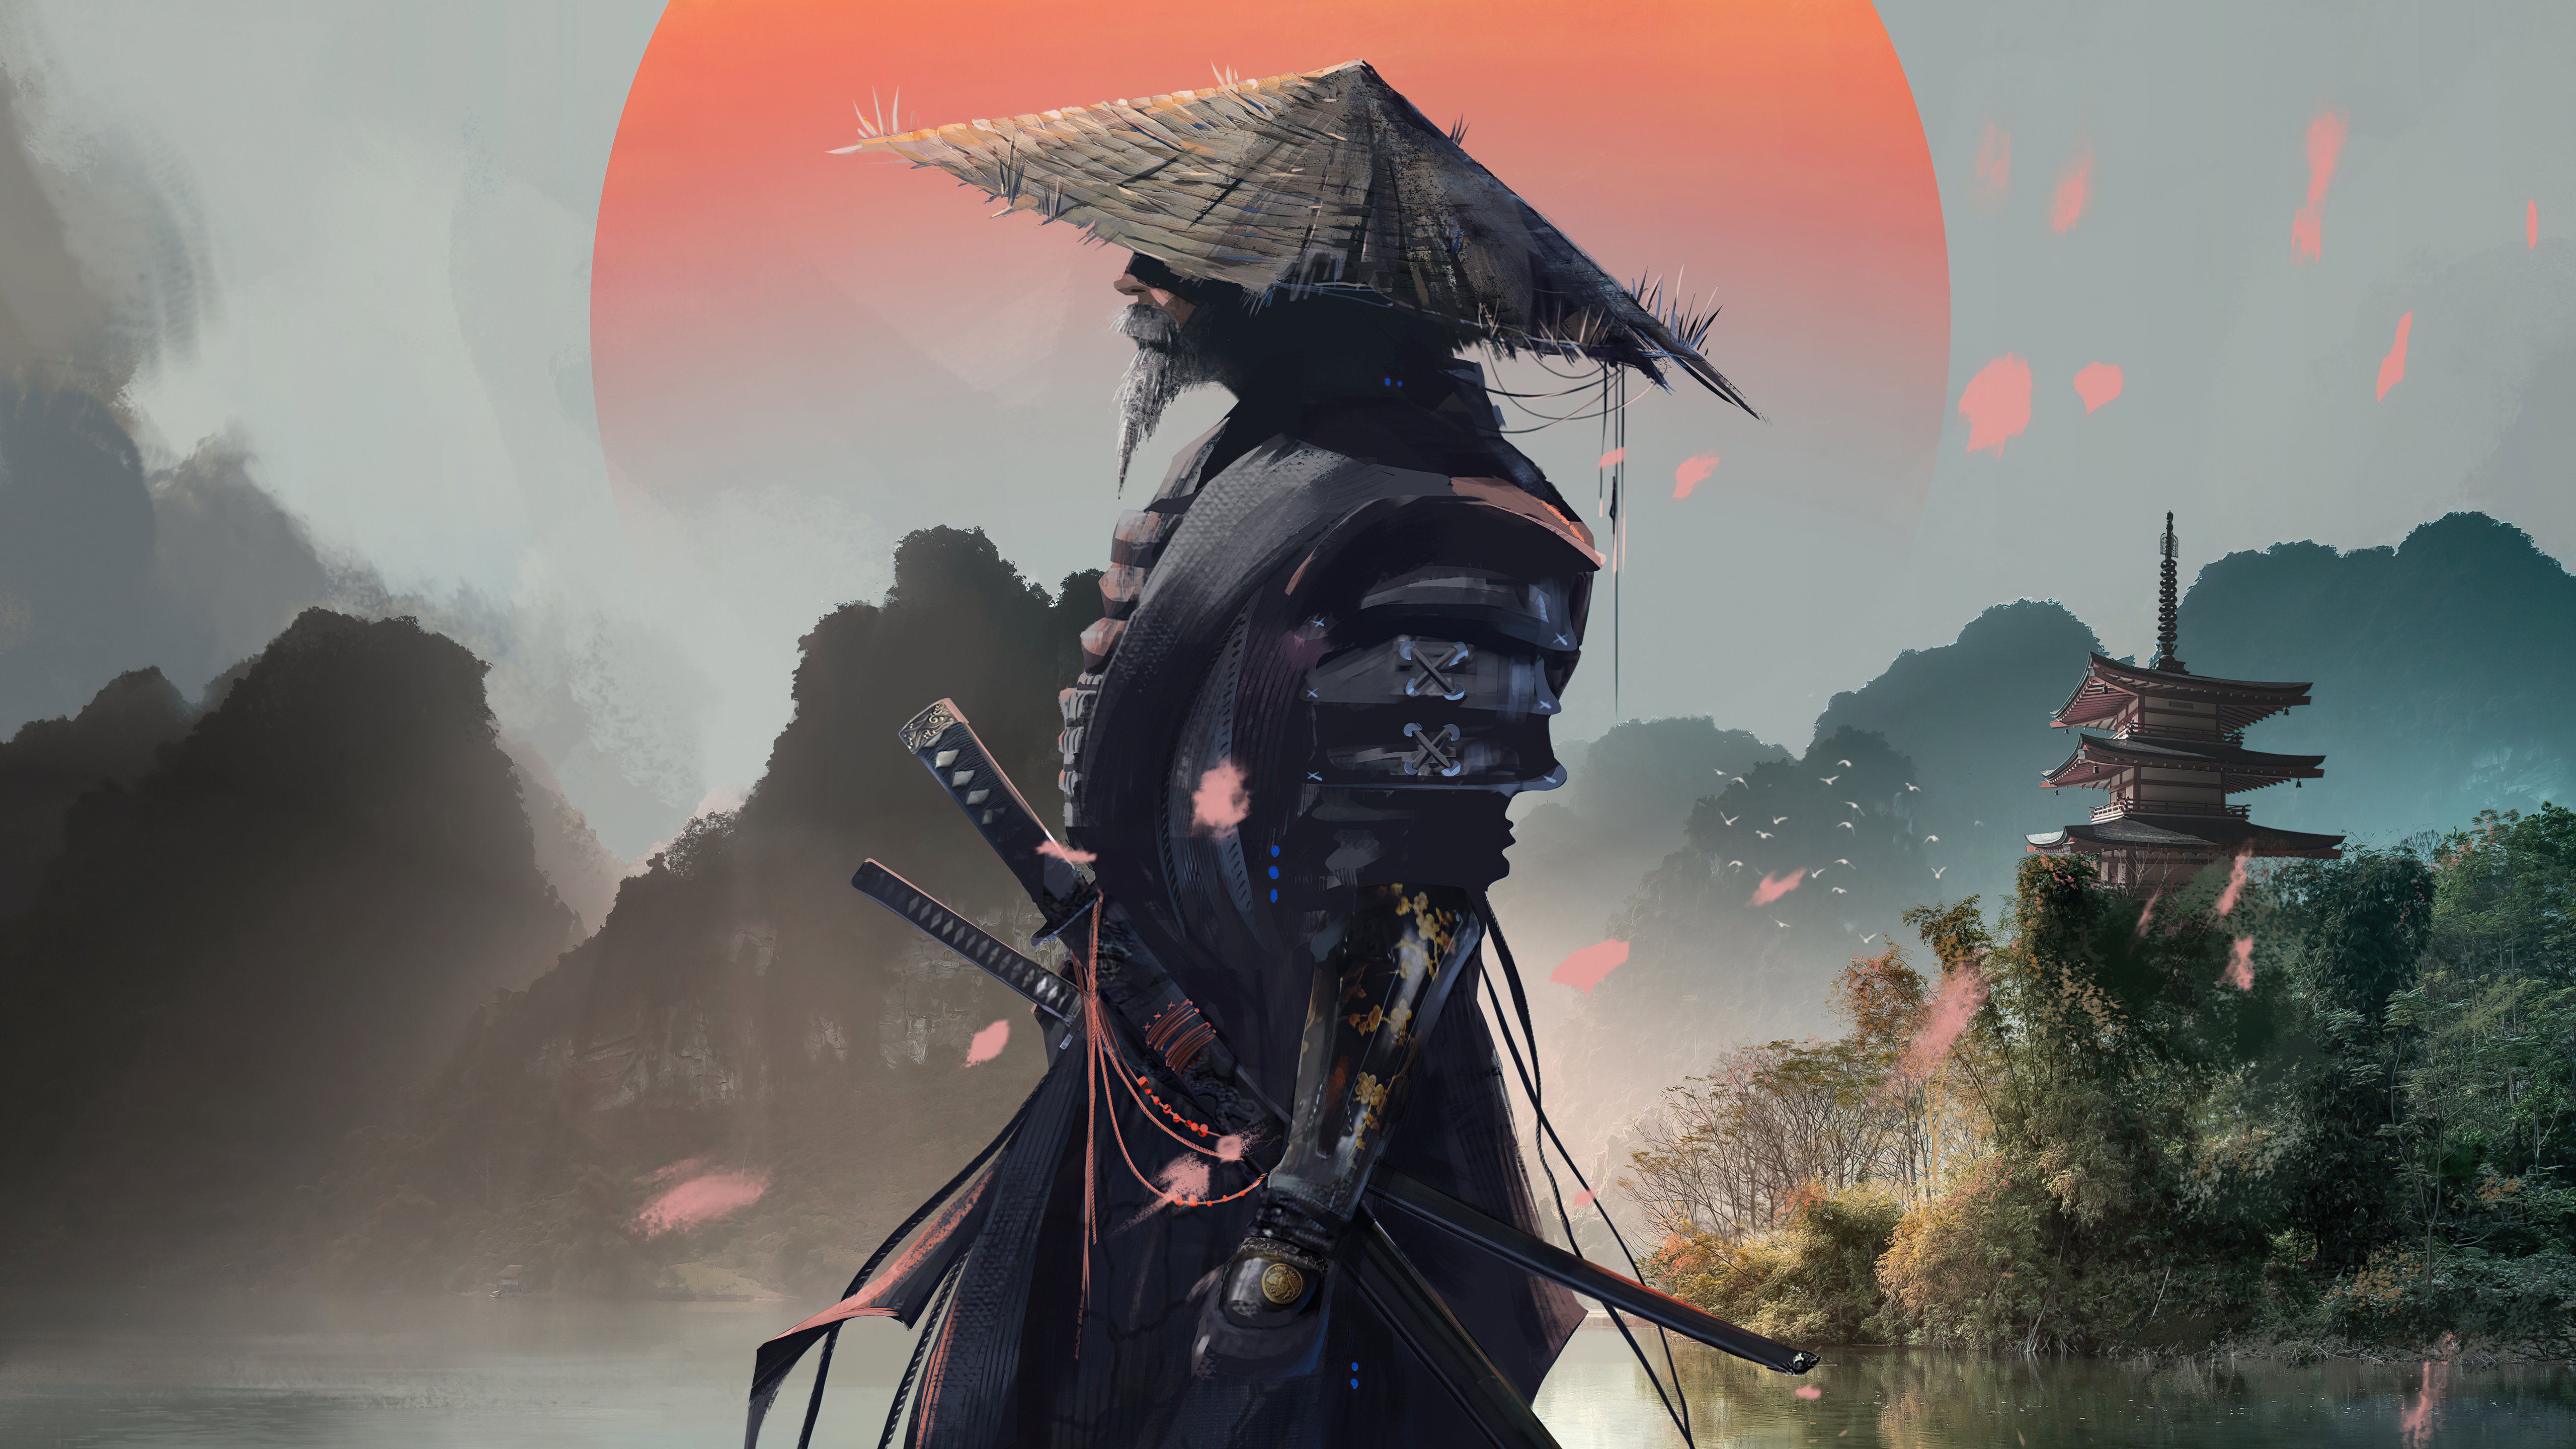 иллюстрации для стима самурай фото 67